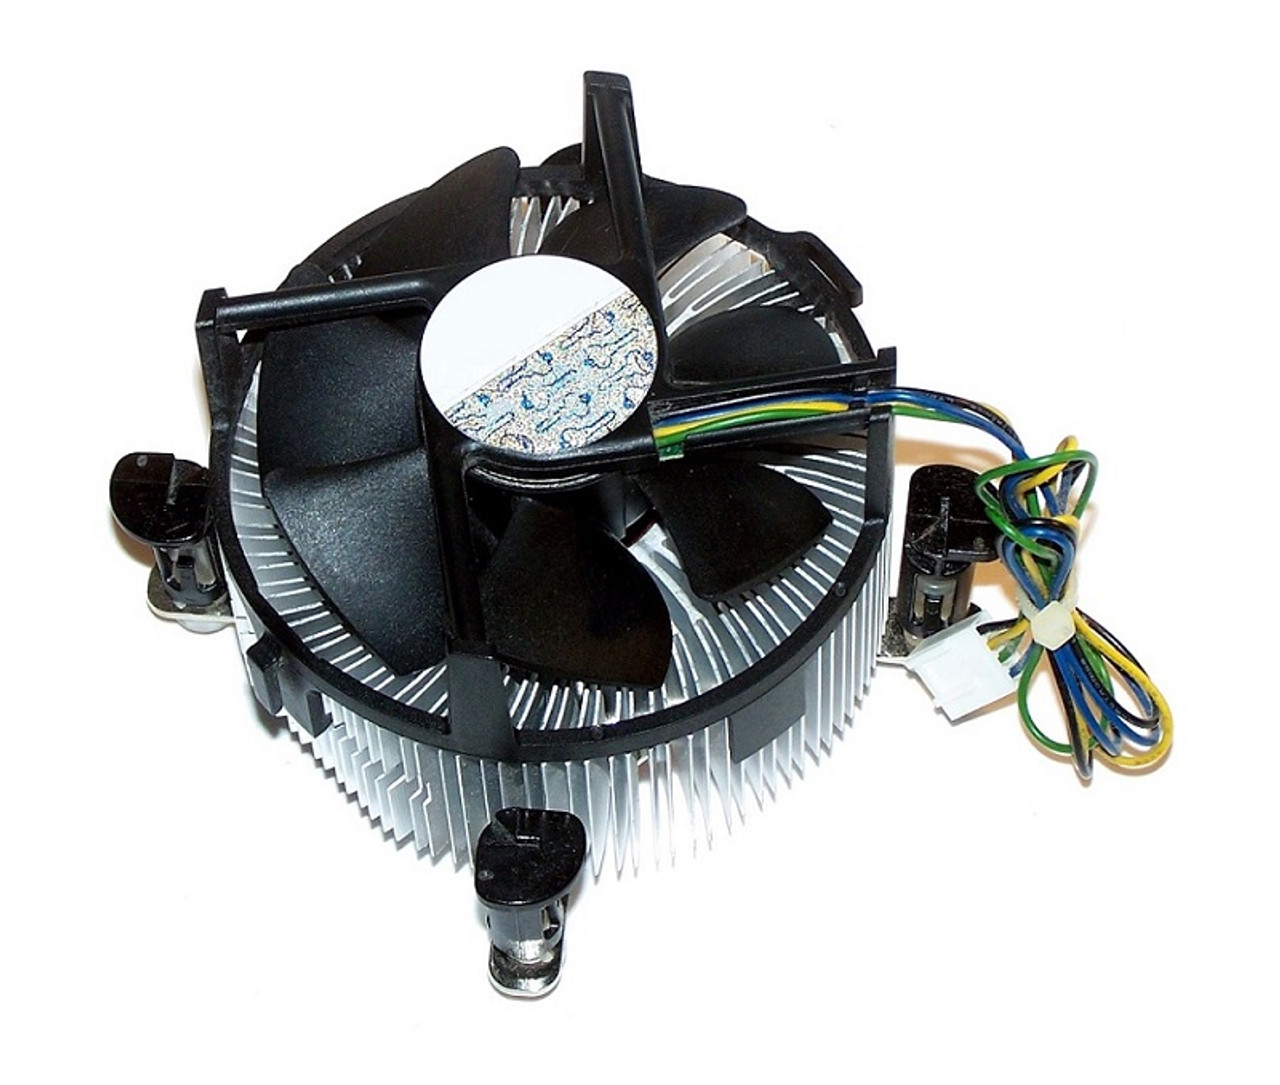 732596-001 - HP Screw Down Type Heatsink/Fan Assembly for ProLiant Ml10 G9